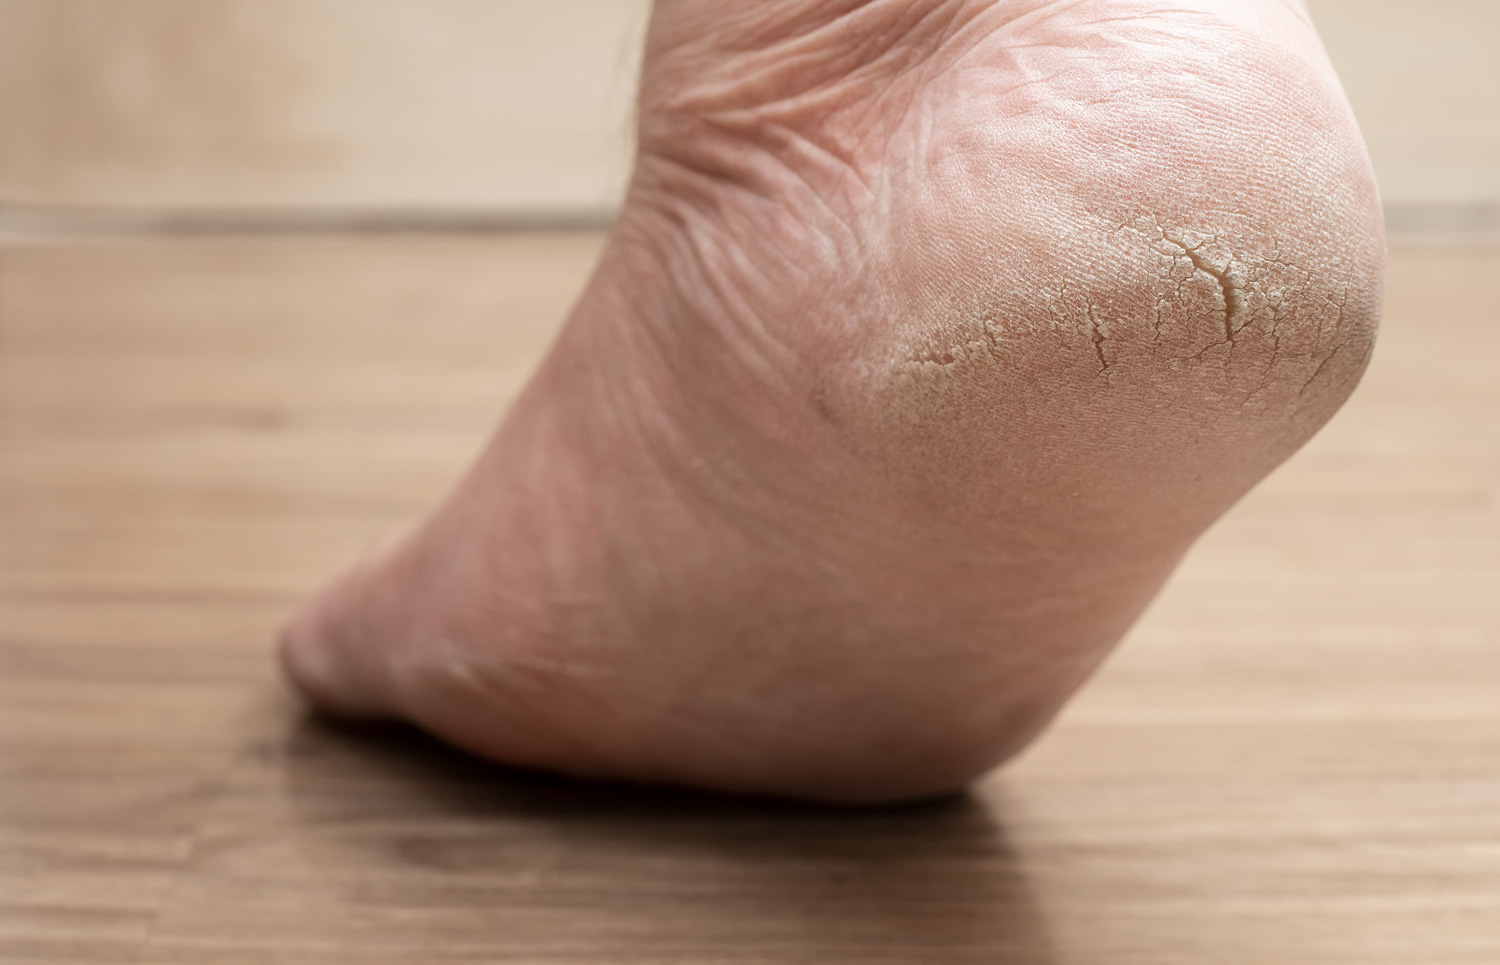 5 Best Cracked Heel Cream | How to Heal Dry Heel Cracks - YouTube